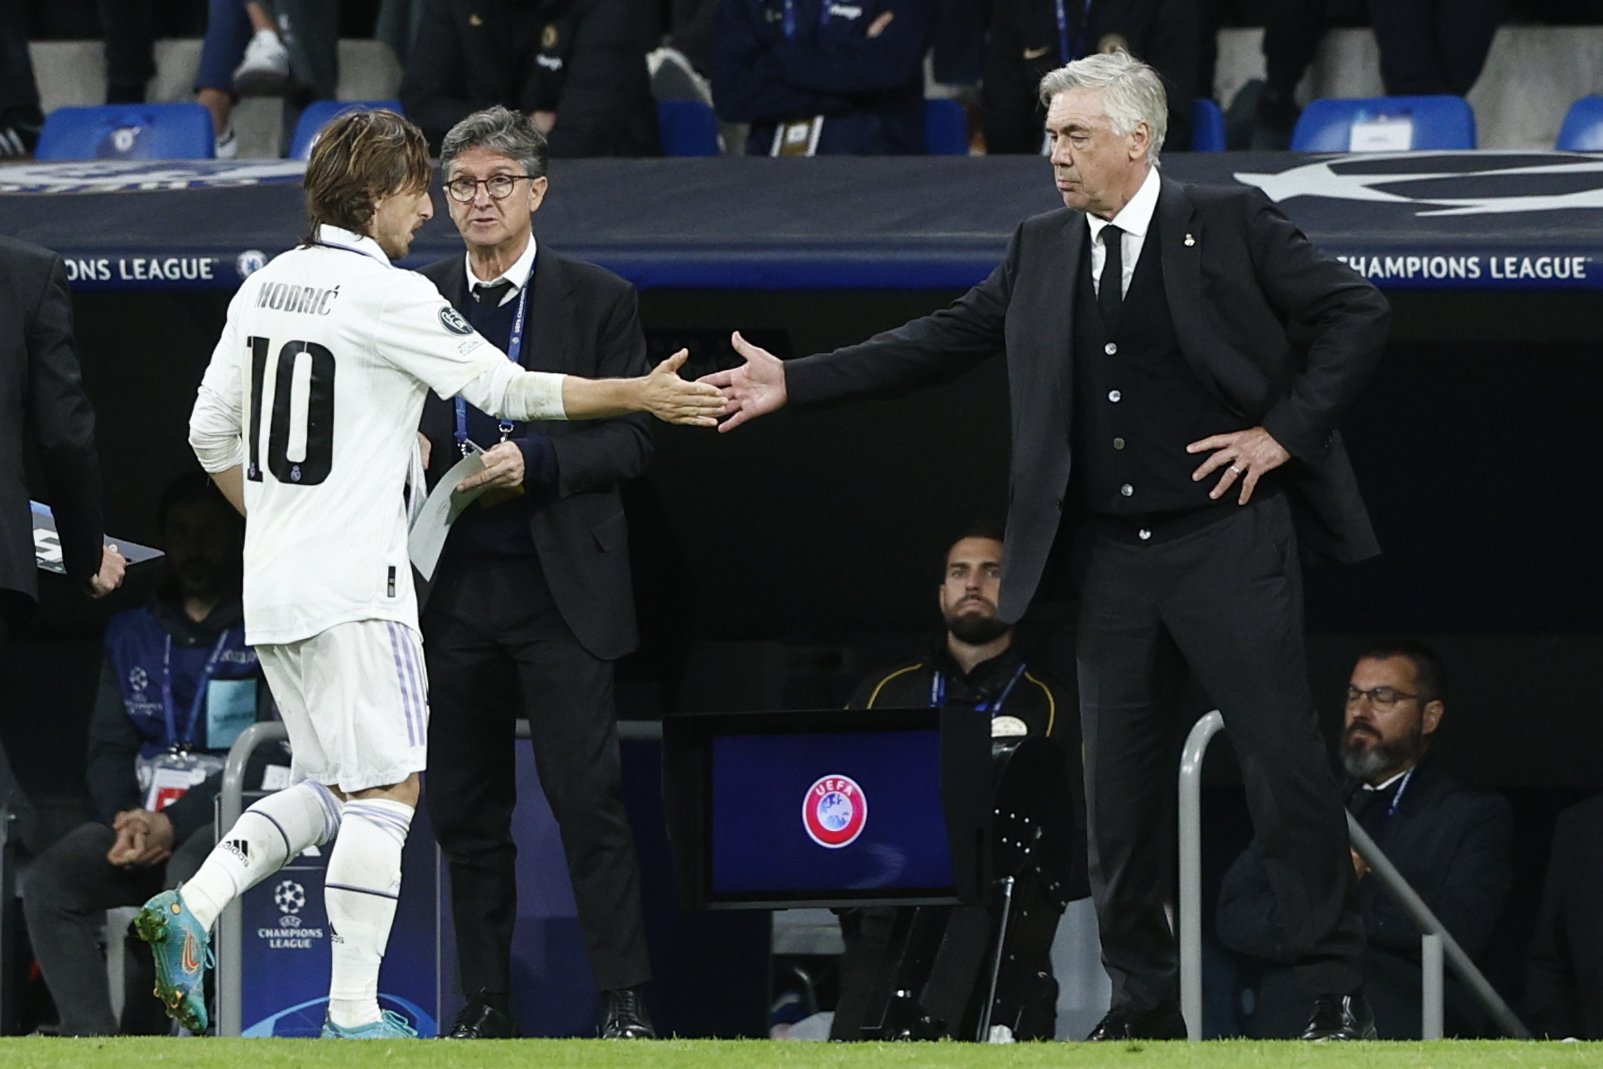 Modric, castigado por Ancelotti, harto, adiós al Real Madrid